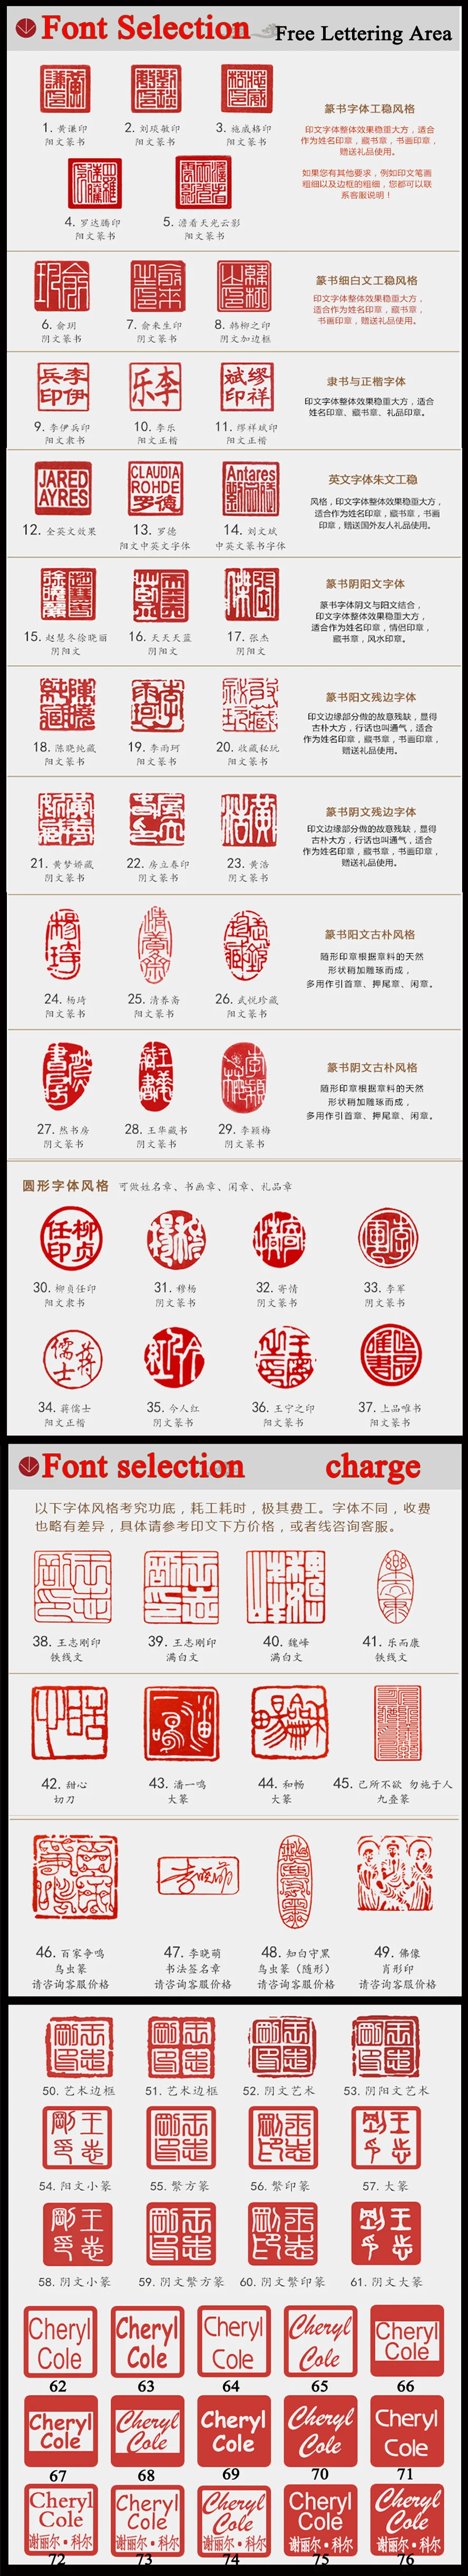 Китайский палец кольцо штамп имя печать штампа стороны Carft гравировка paintint печать художественных промыслов